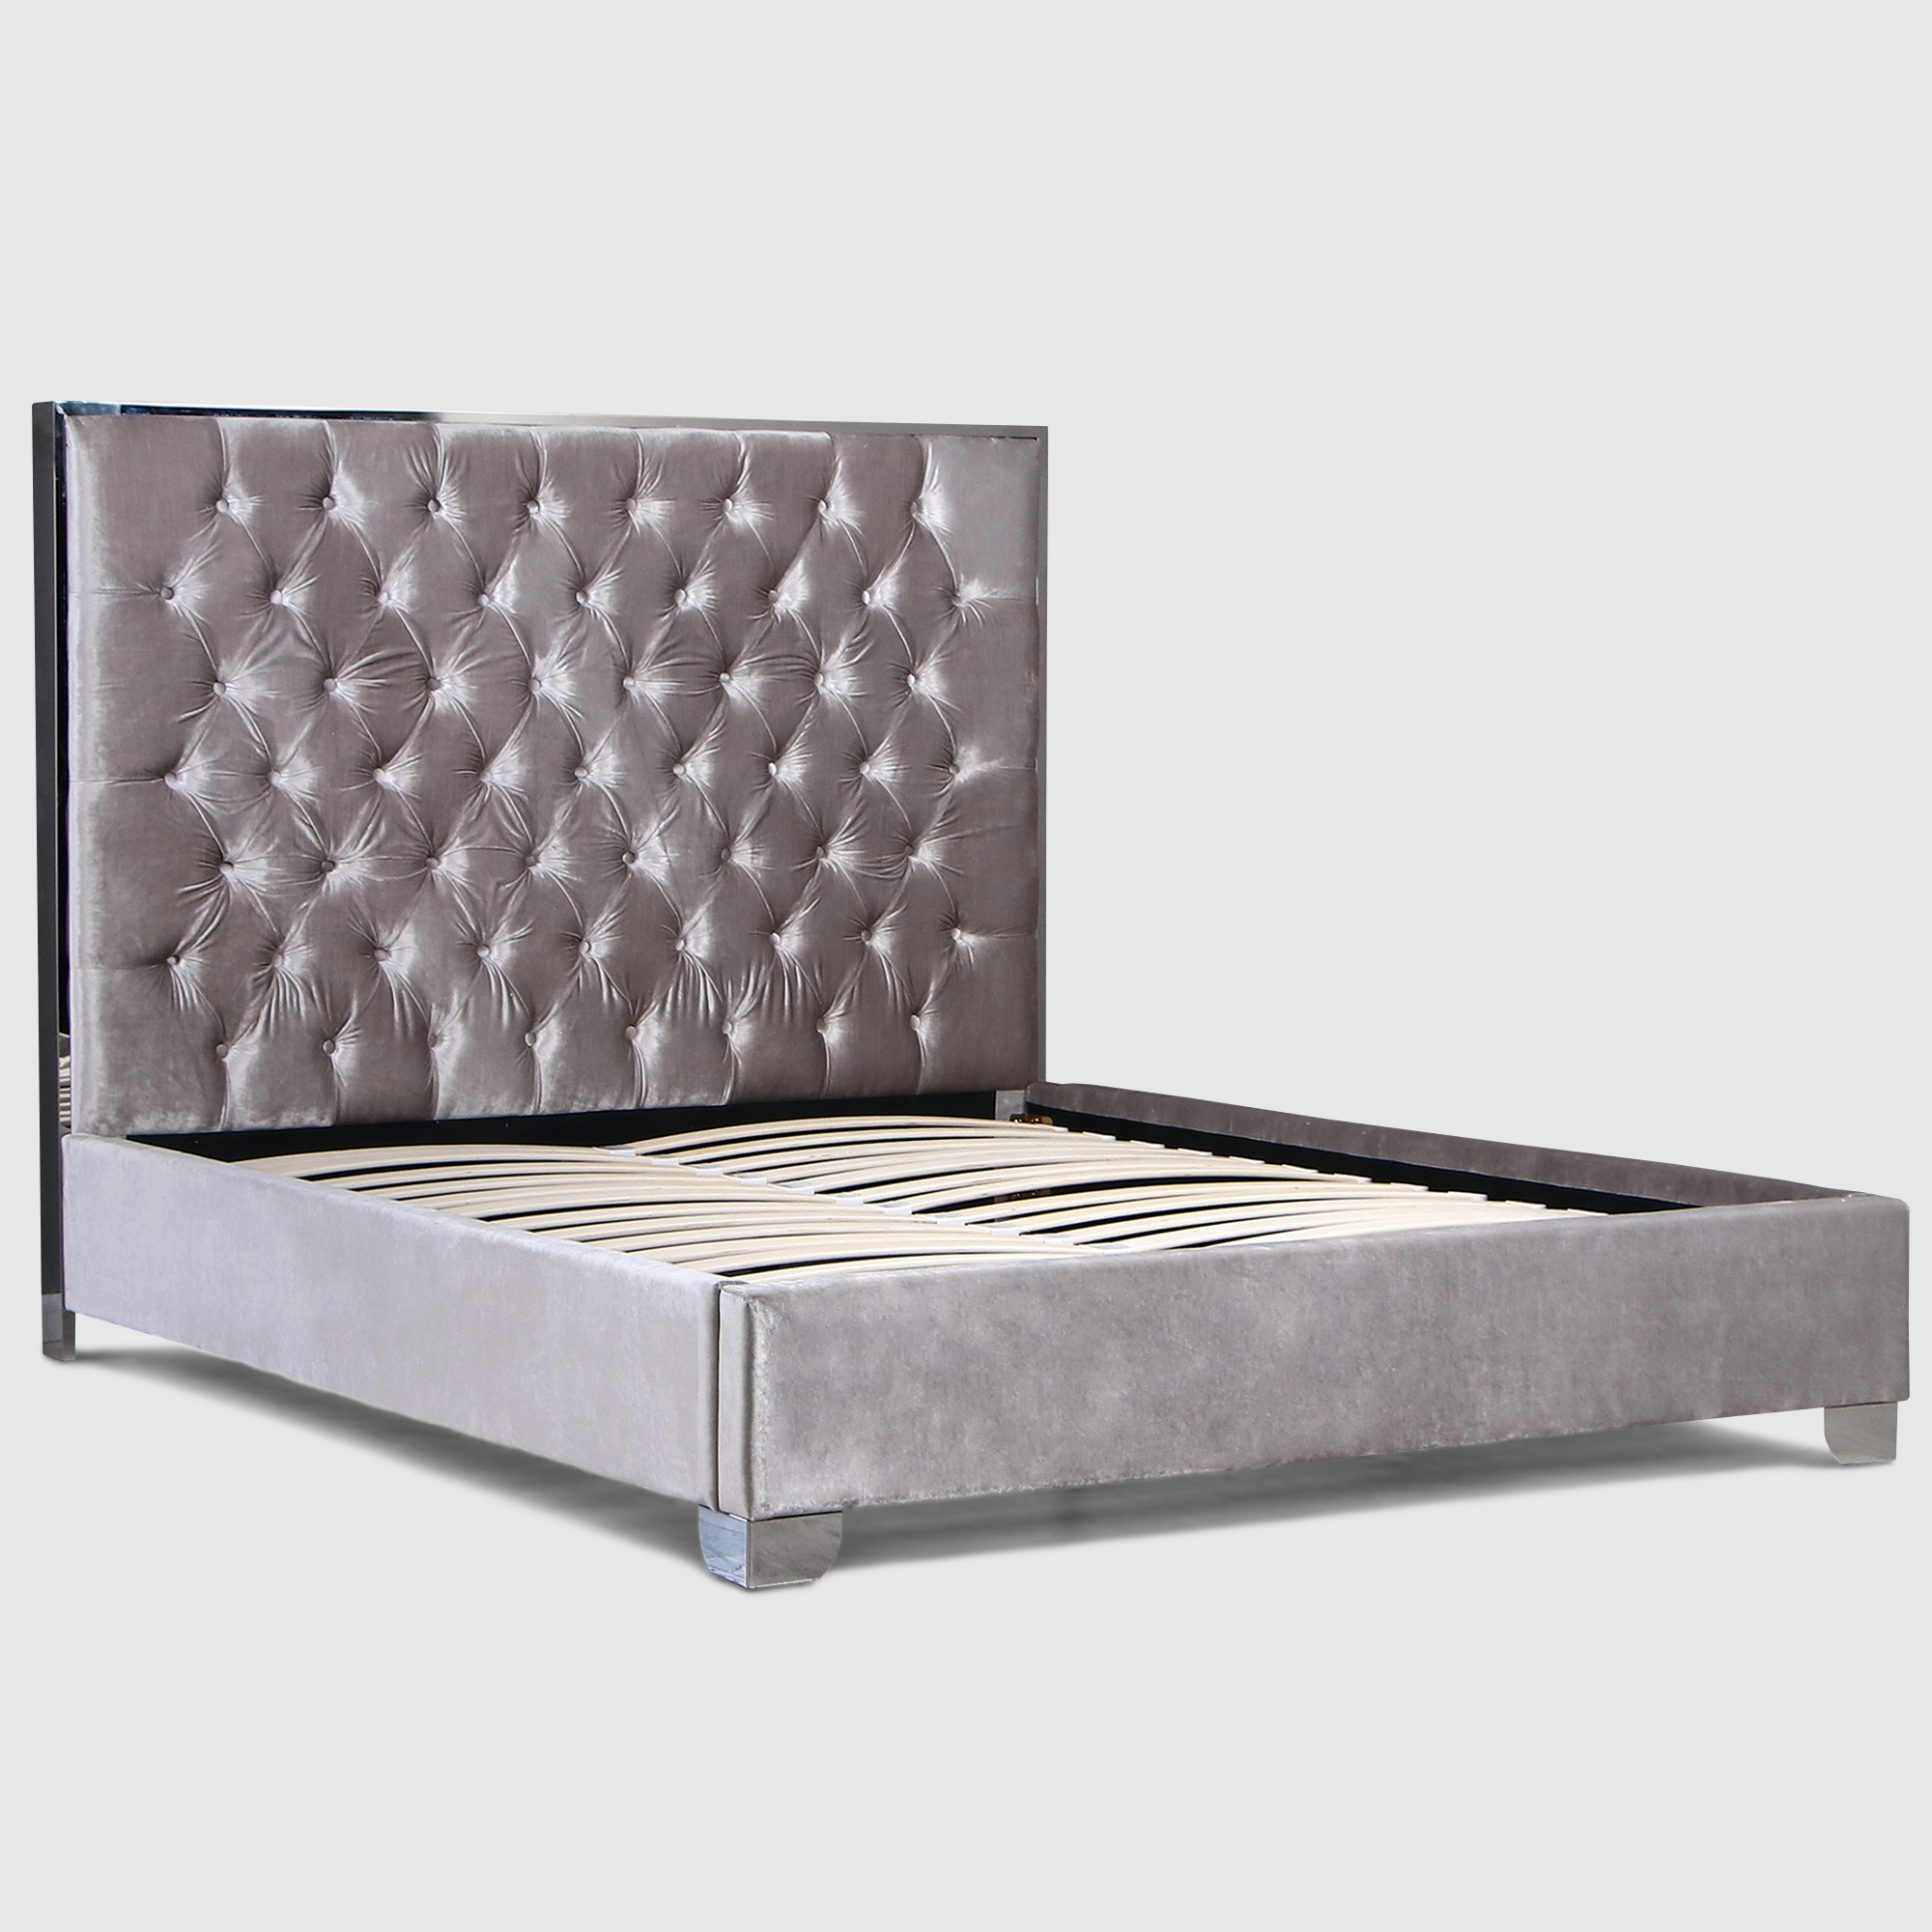 Кровать двуспальная AHF Лили серебристая 160x200 см кровать двухъярусная капризун капризун 3